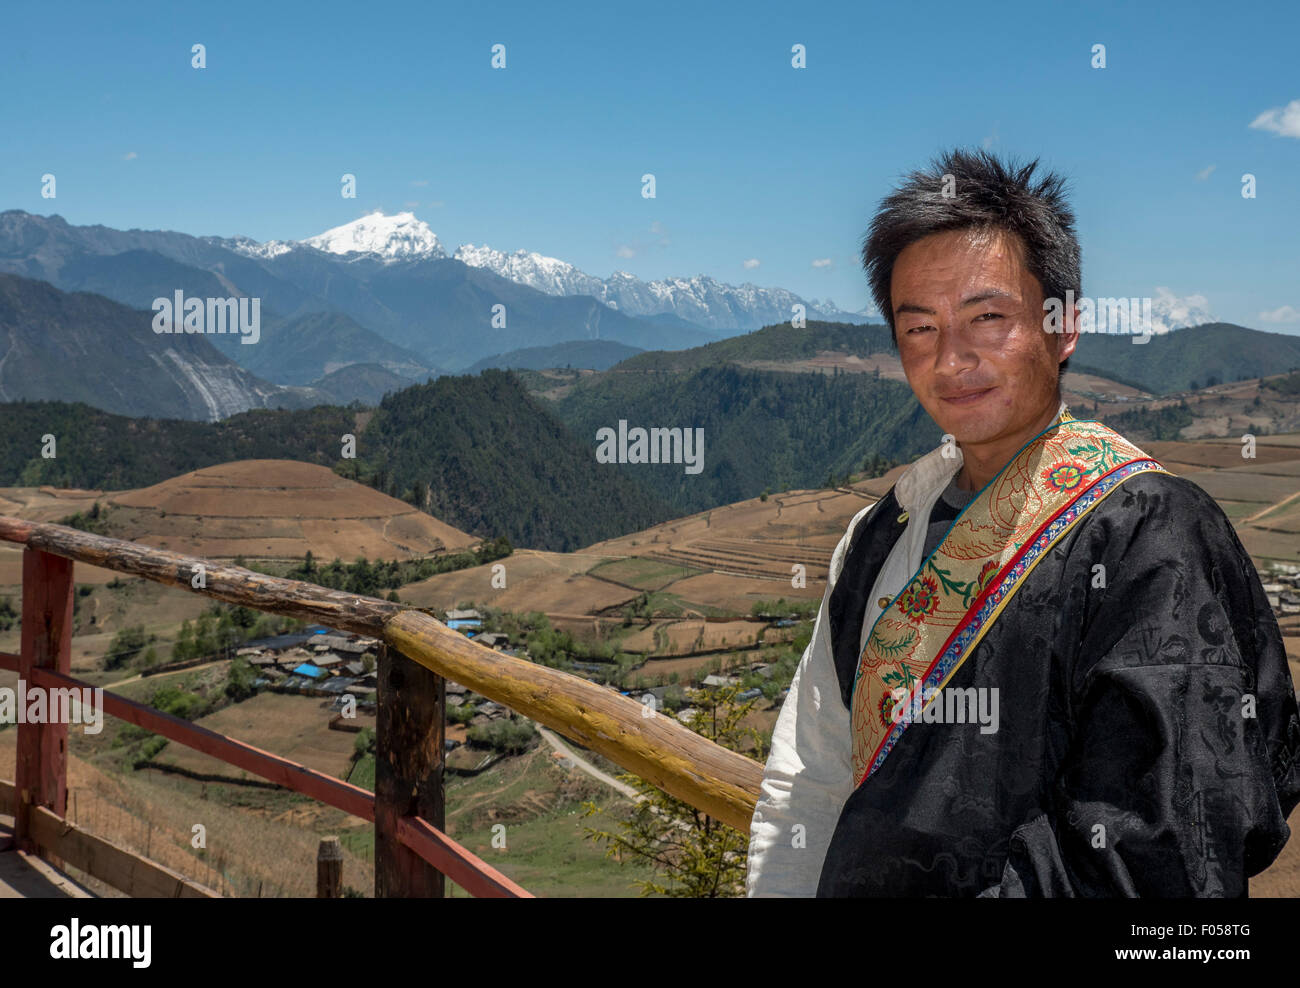 Ein Tibetische Mann Gekleidet In Traditioneller Tracht Posen Vor Meili Schnee Berg In Der Provinz Yunnan China Stockfotografie Alamy